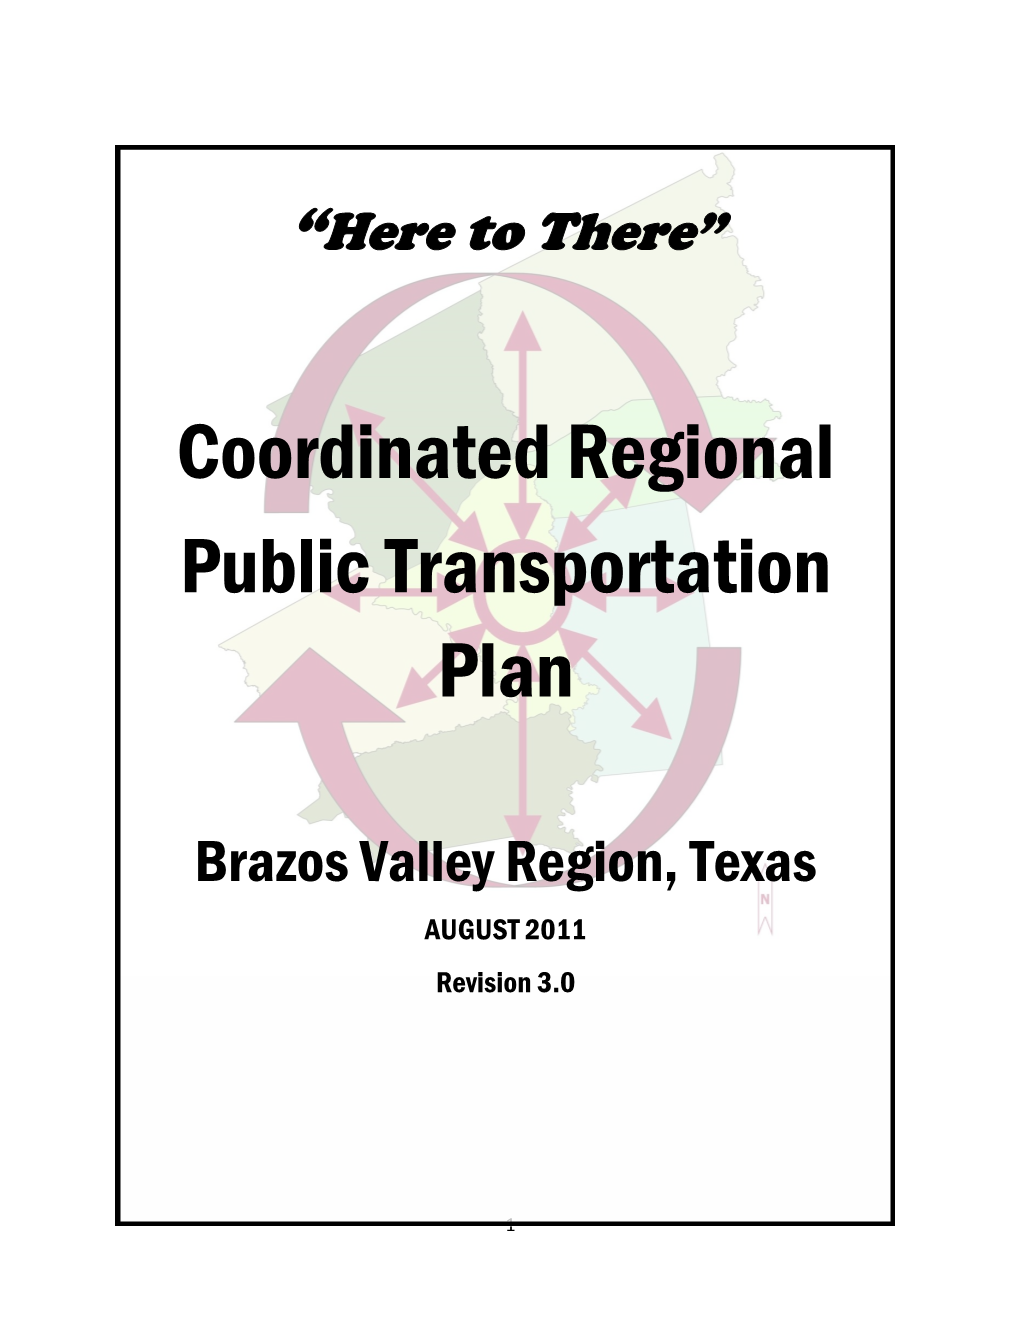 2011 Coordinated Regional Public Transportation Plan